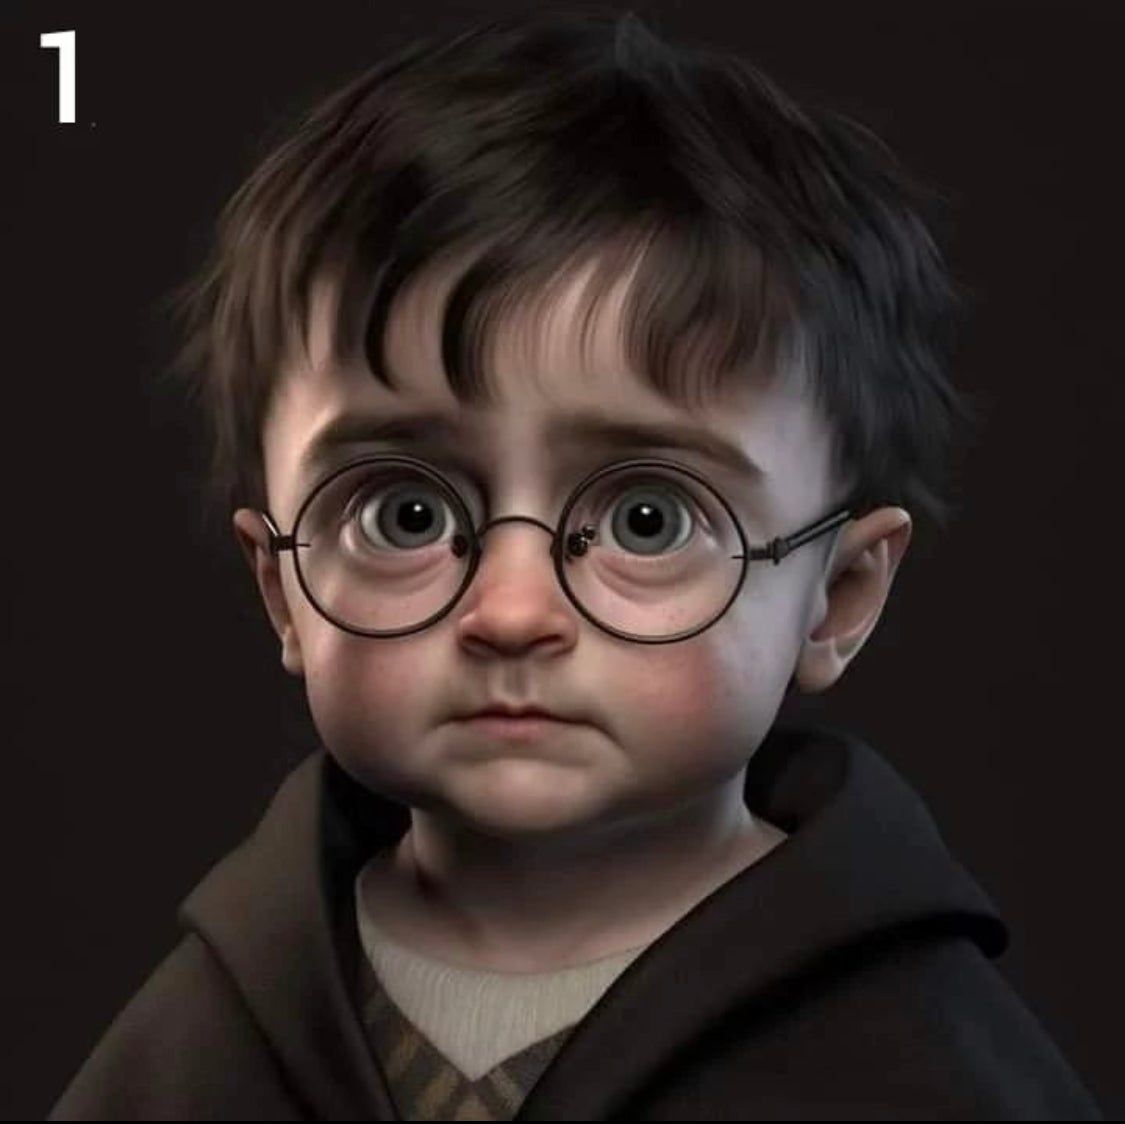 เมื่อตัวละคร Harry Potter กลายเป็นเด็กจิ๋วอีกครั้ง